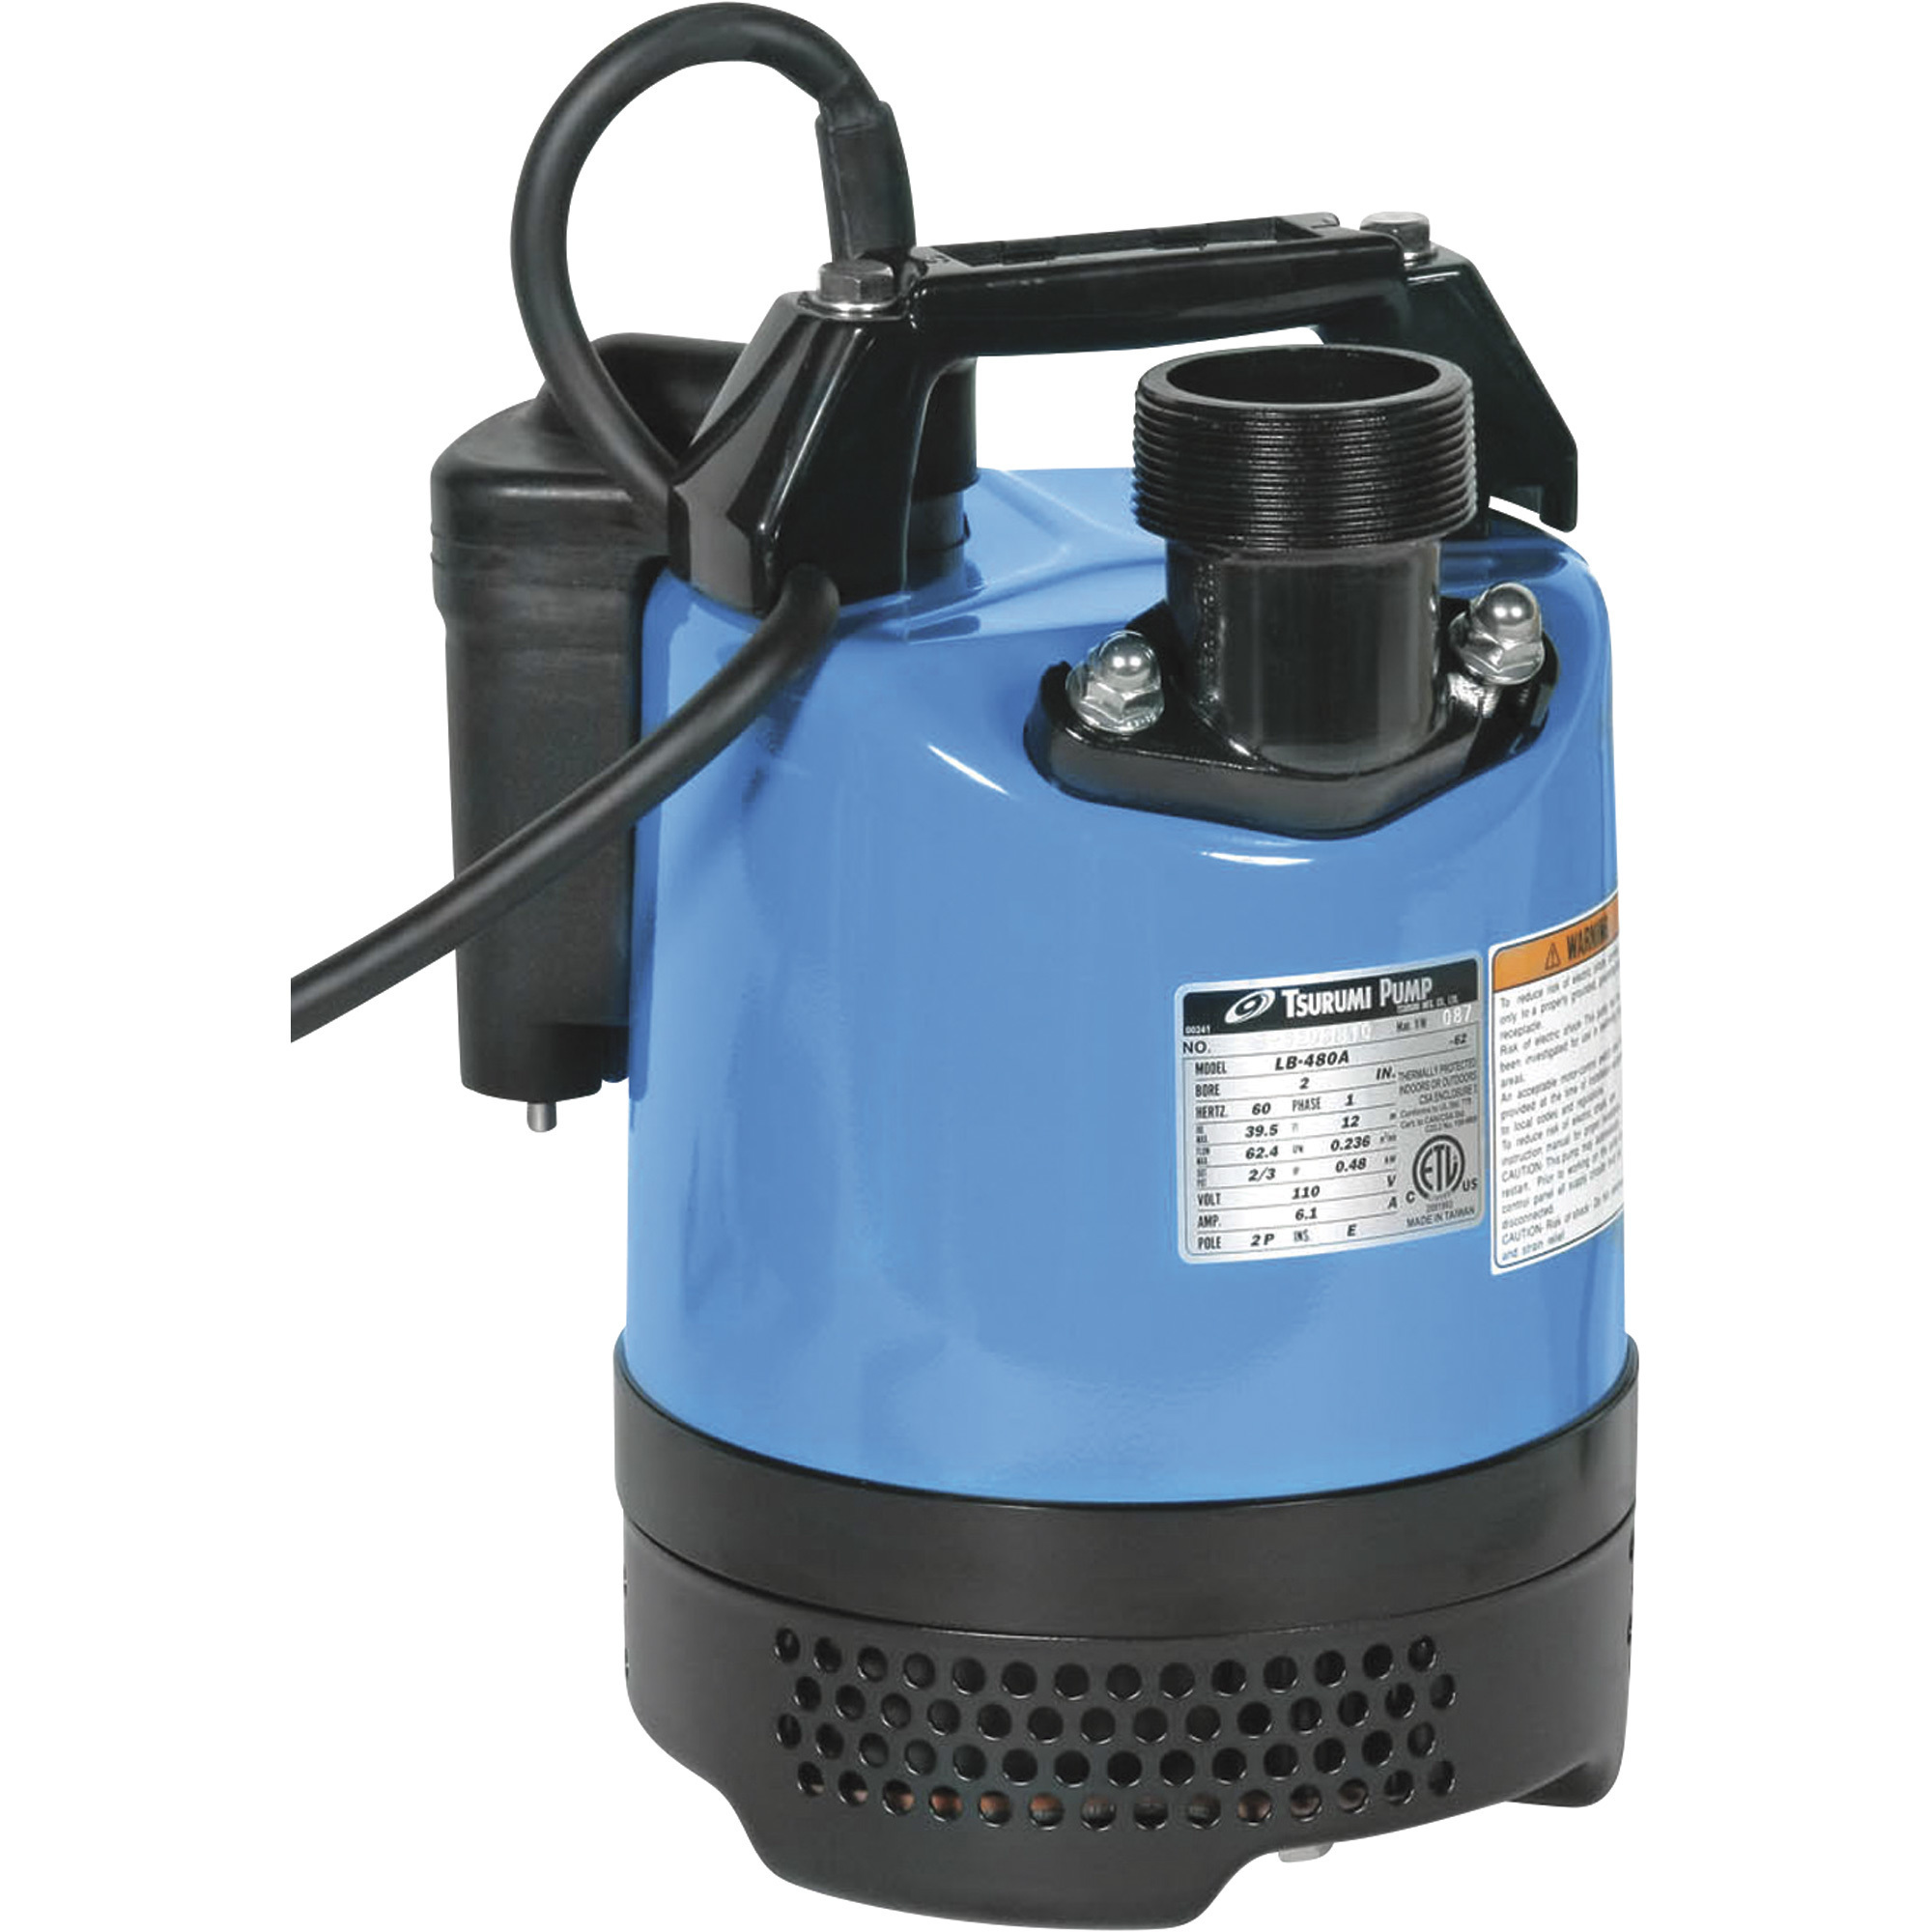 Tsurumi Dewatering Submersible Water Pump â 3744 GPH, 2/3 HP, 2Inch Port, Model LB-480A